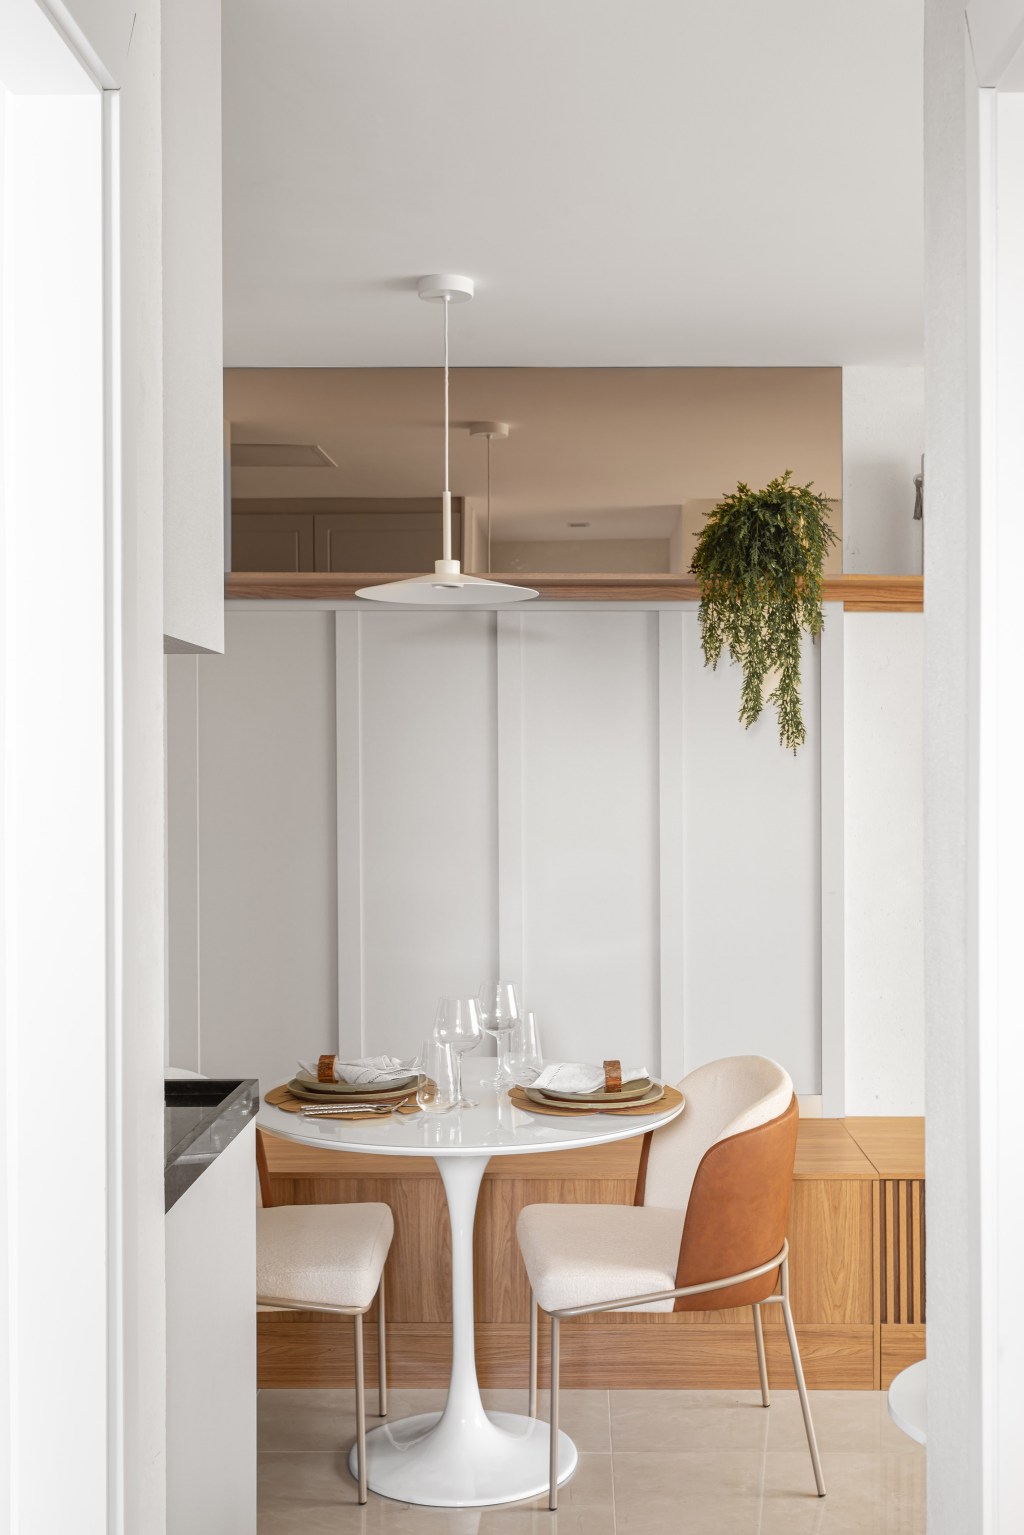 Apê compacto de 56 m² foi projetado para uma família de quatro pessoas. Projeto Nop Arquitetura. Na foto, sala de jantar com mesa redonda e banco.